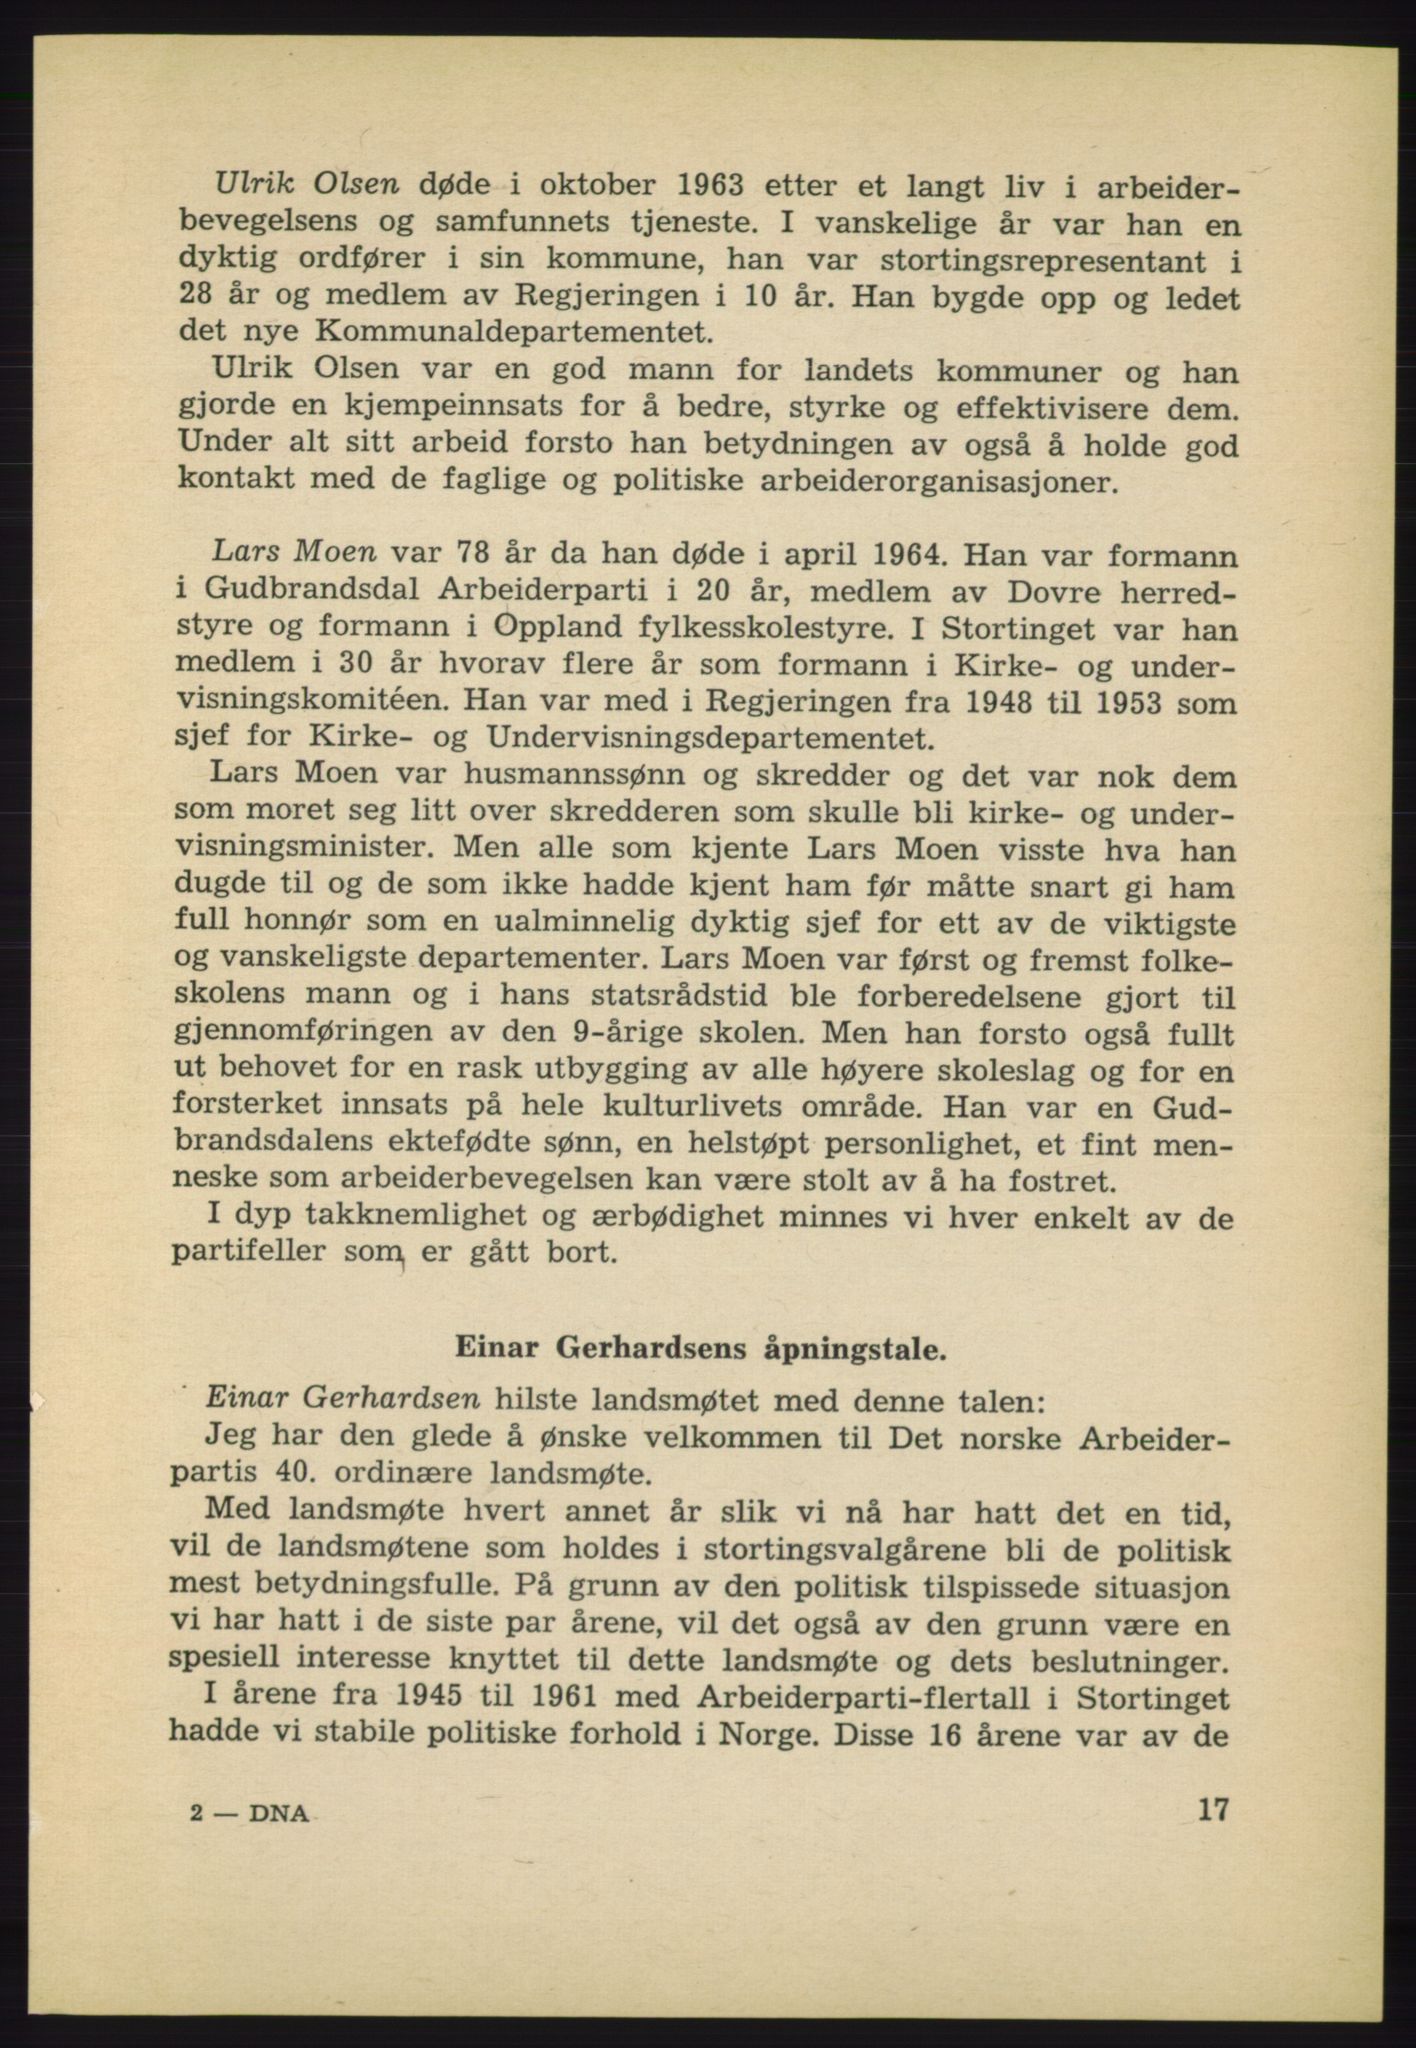 Det norske Arbeiderparti - publikasjoner, AAB/-/-/-: Protokoll over forhandlingene på det 40. ordinære landsmøte 27.-29. mai 1965 i Oslo, 1965, p. 17